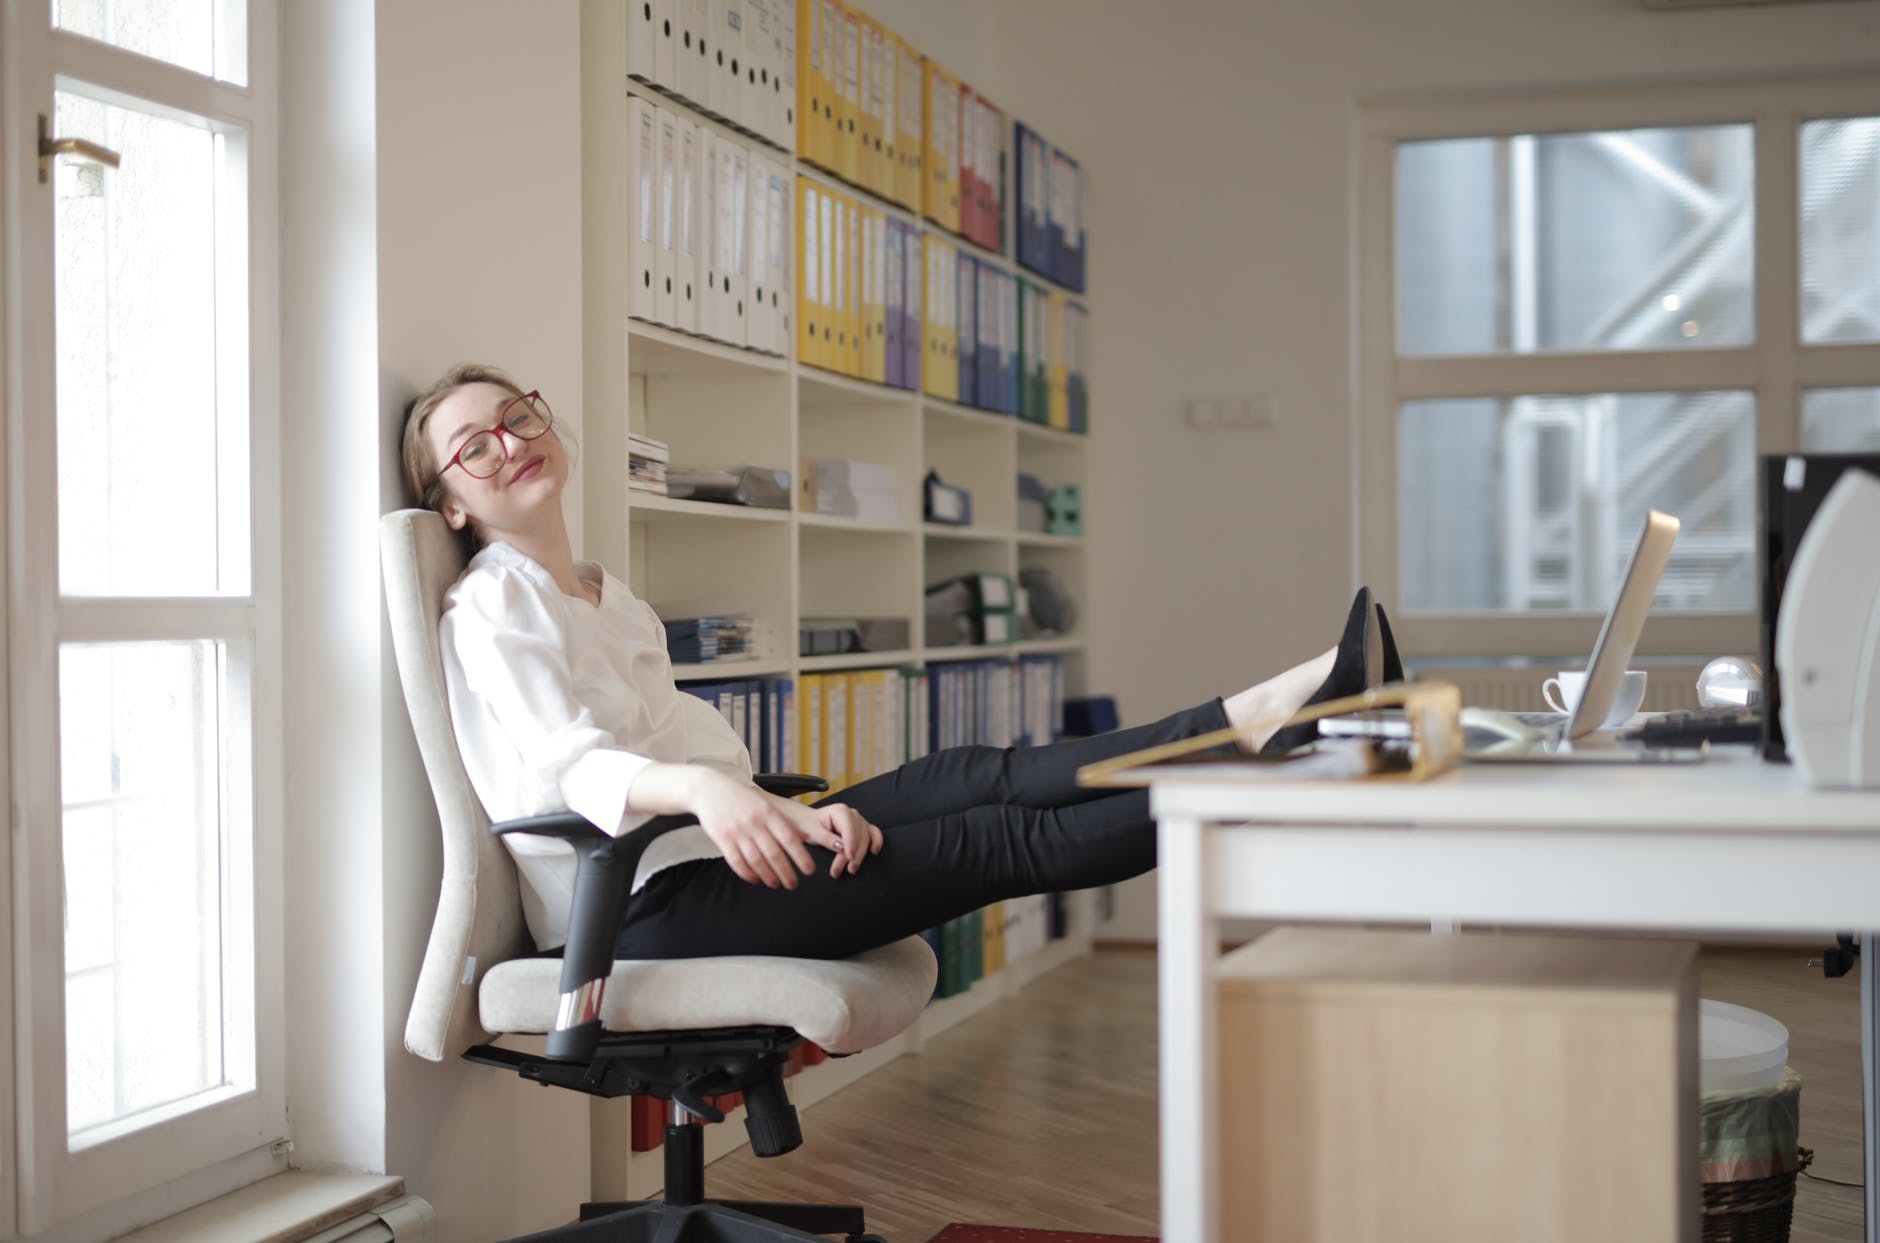 Příslušenství ke kancelářské židli, které ocení zaměstnanec i podlaha